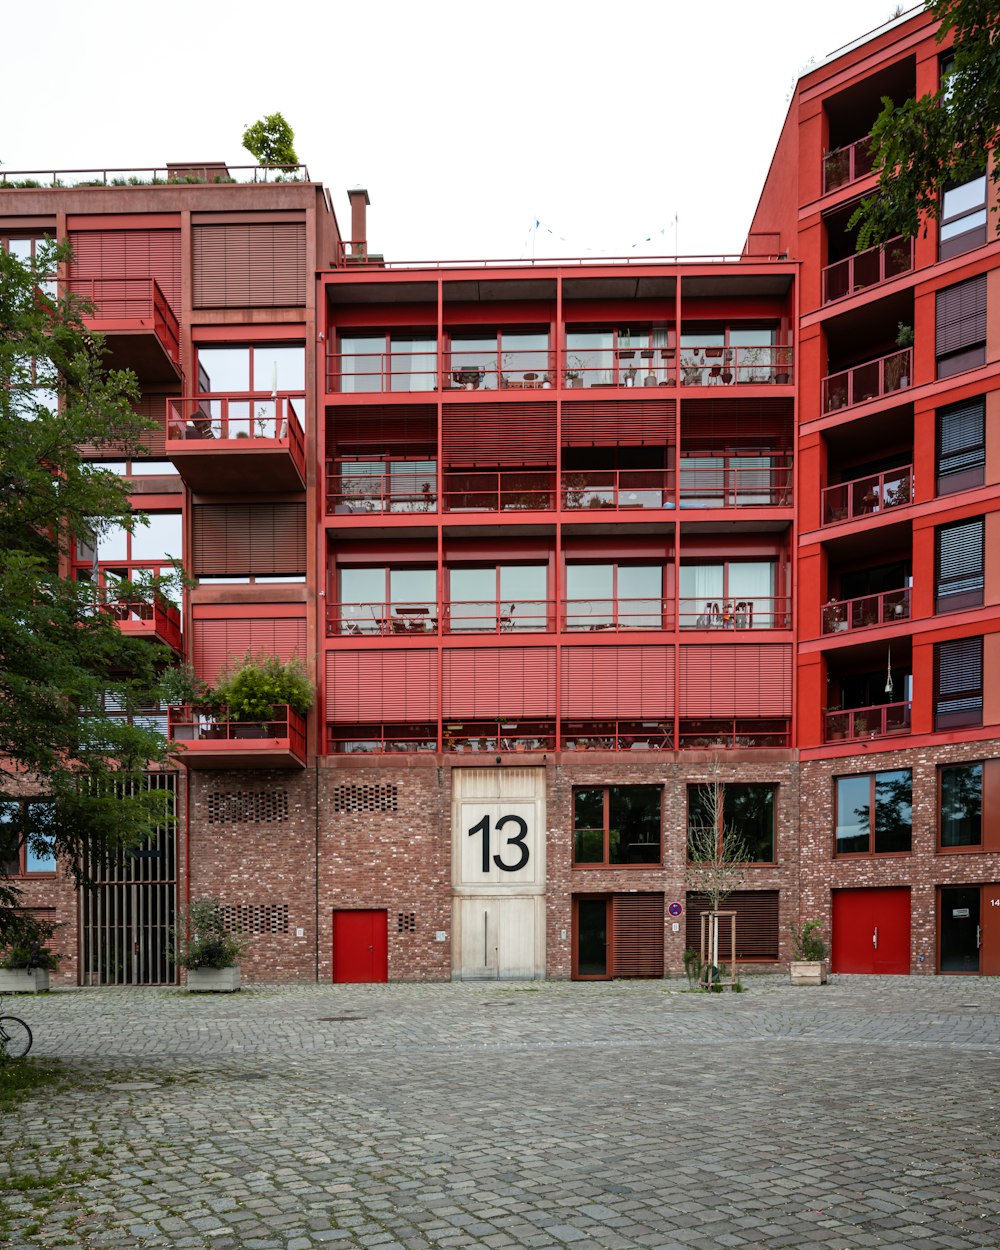 숫자 13이 적힌 빨간 건물